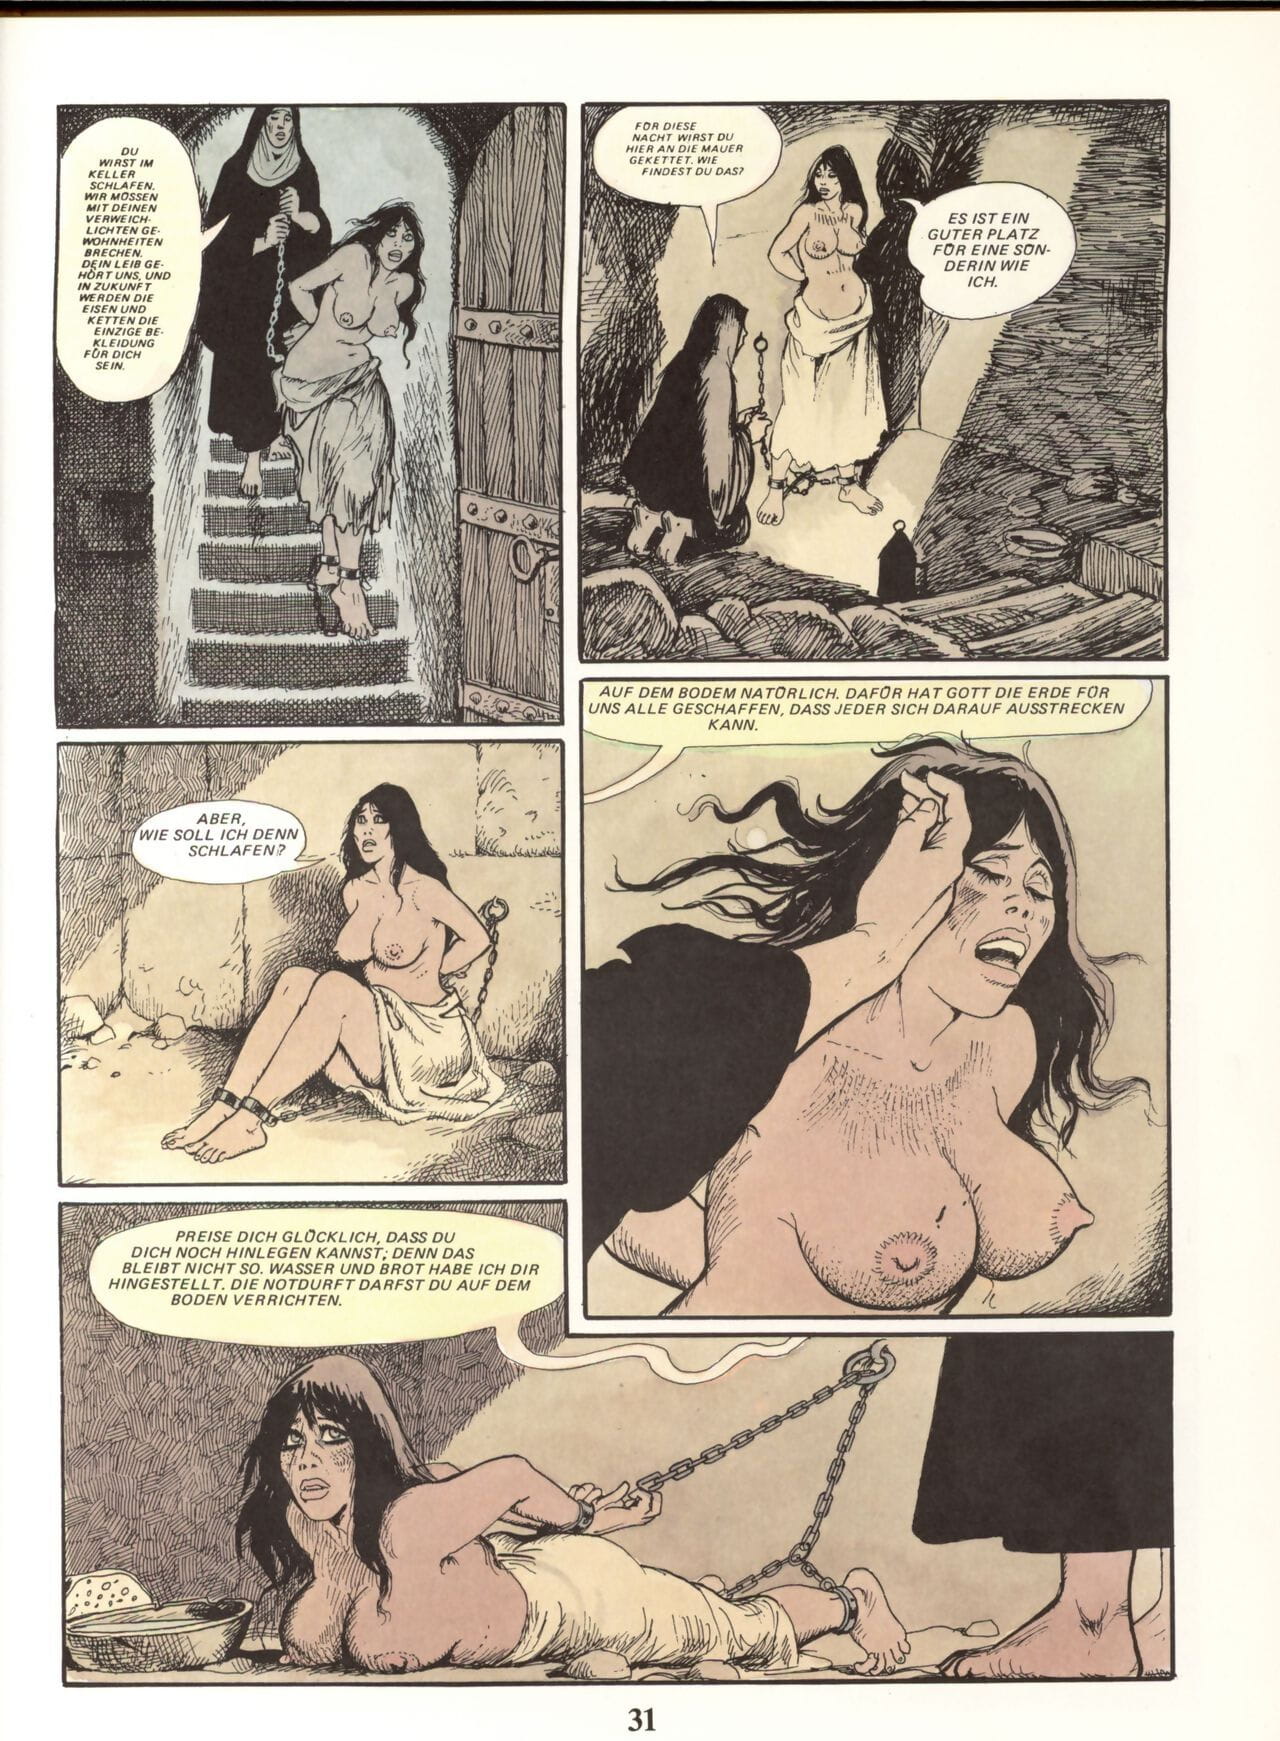 ماري غابرييل دي سانت المترو #02 جزء 2 page 1